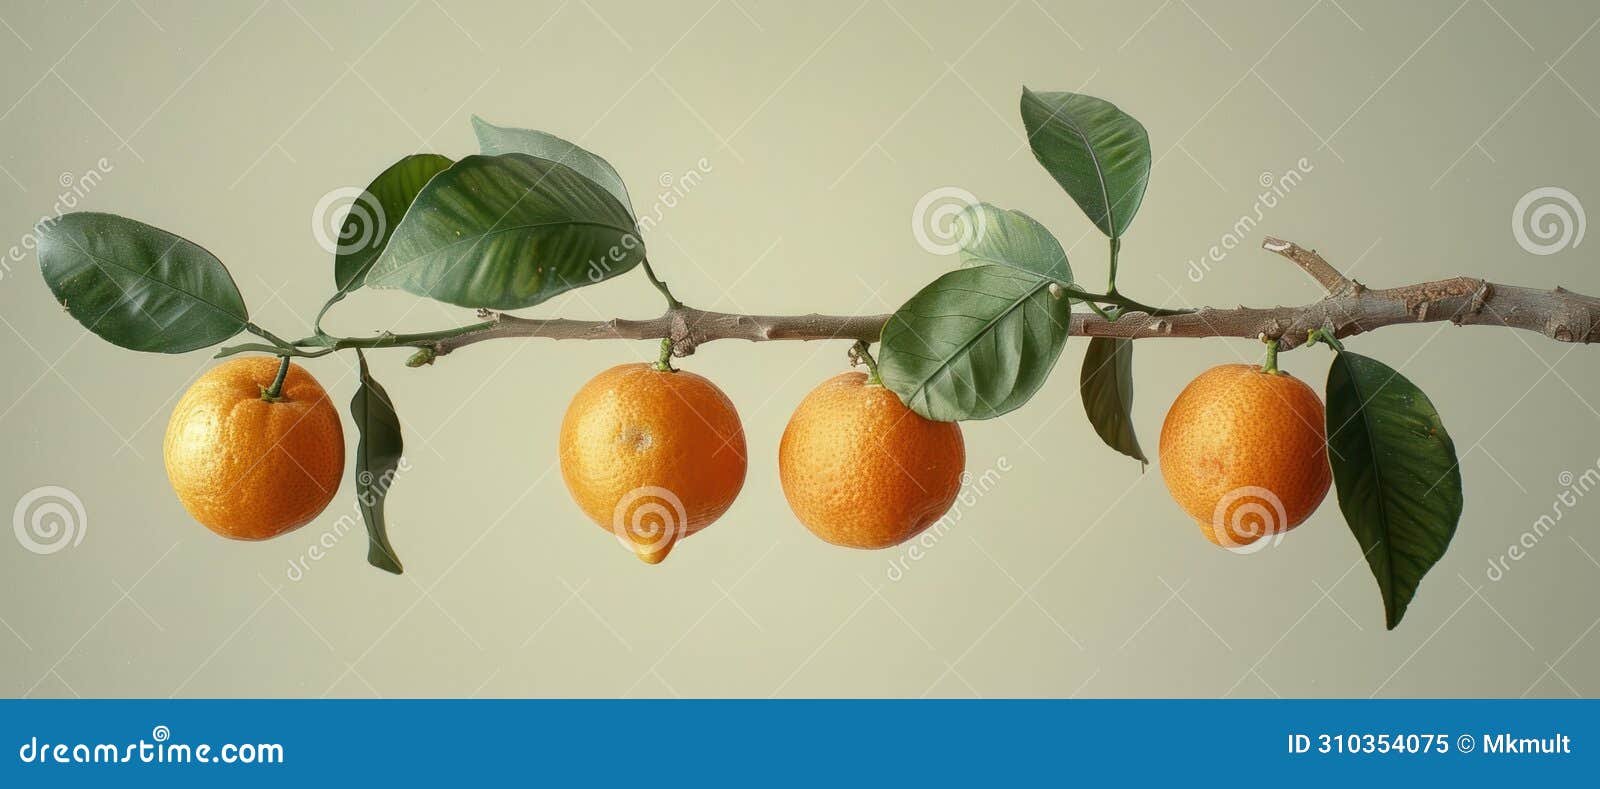 citrus lucida branch with five oranges